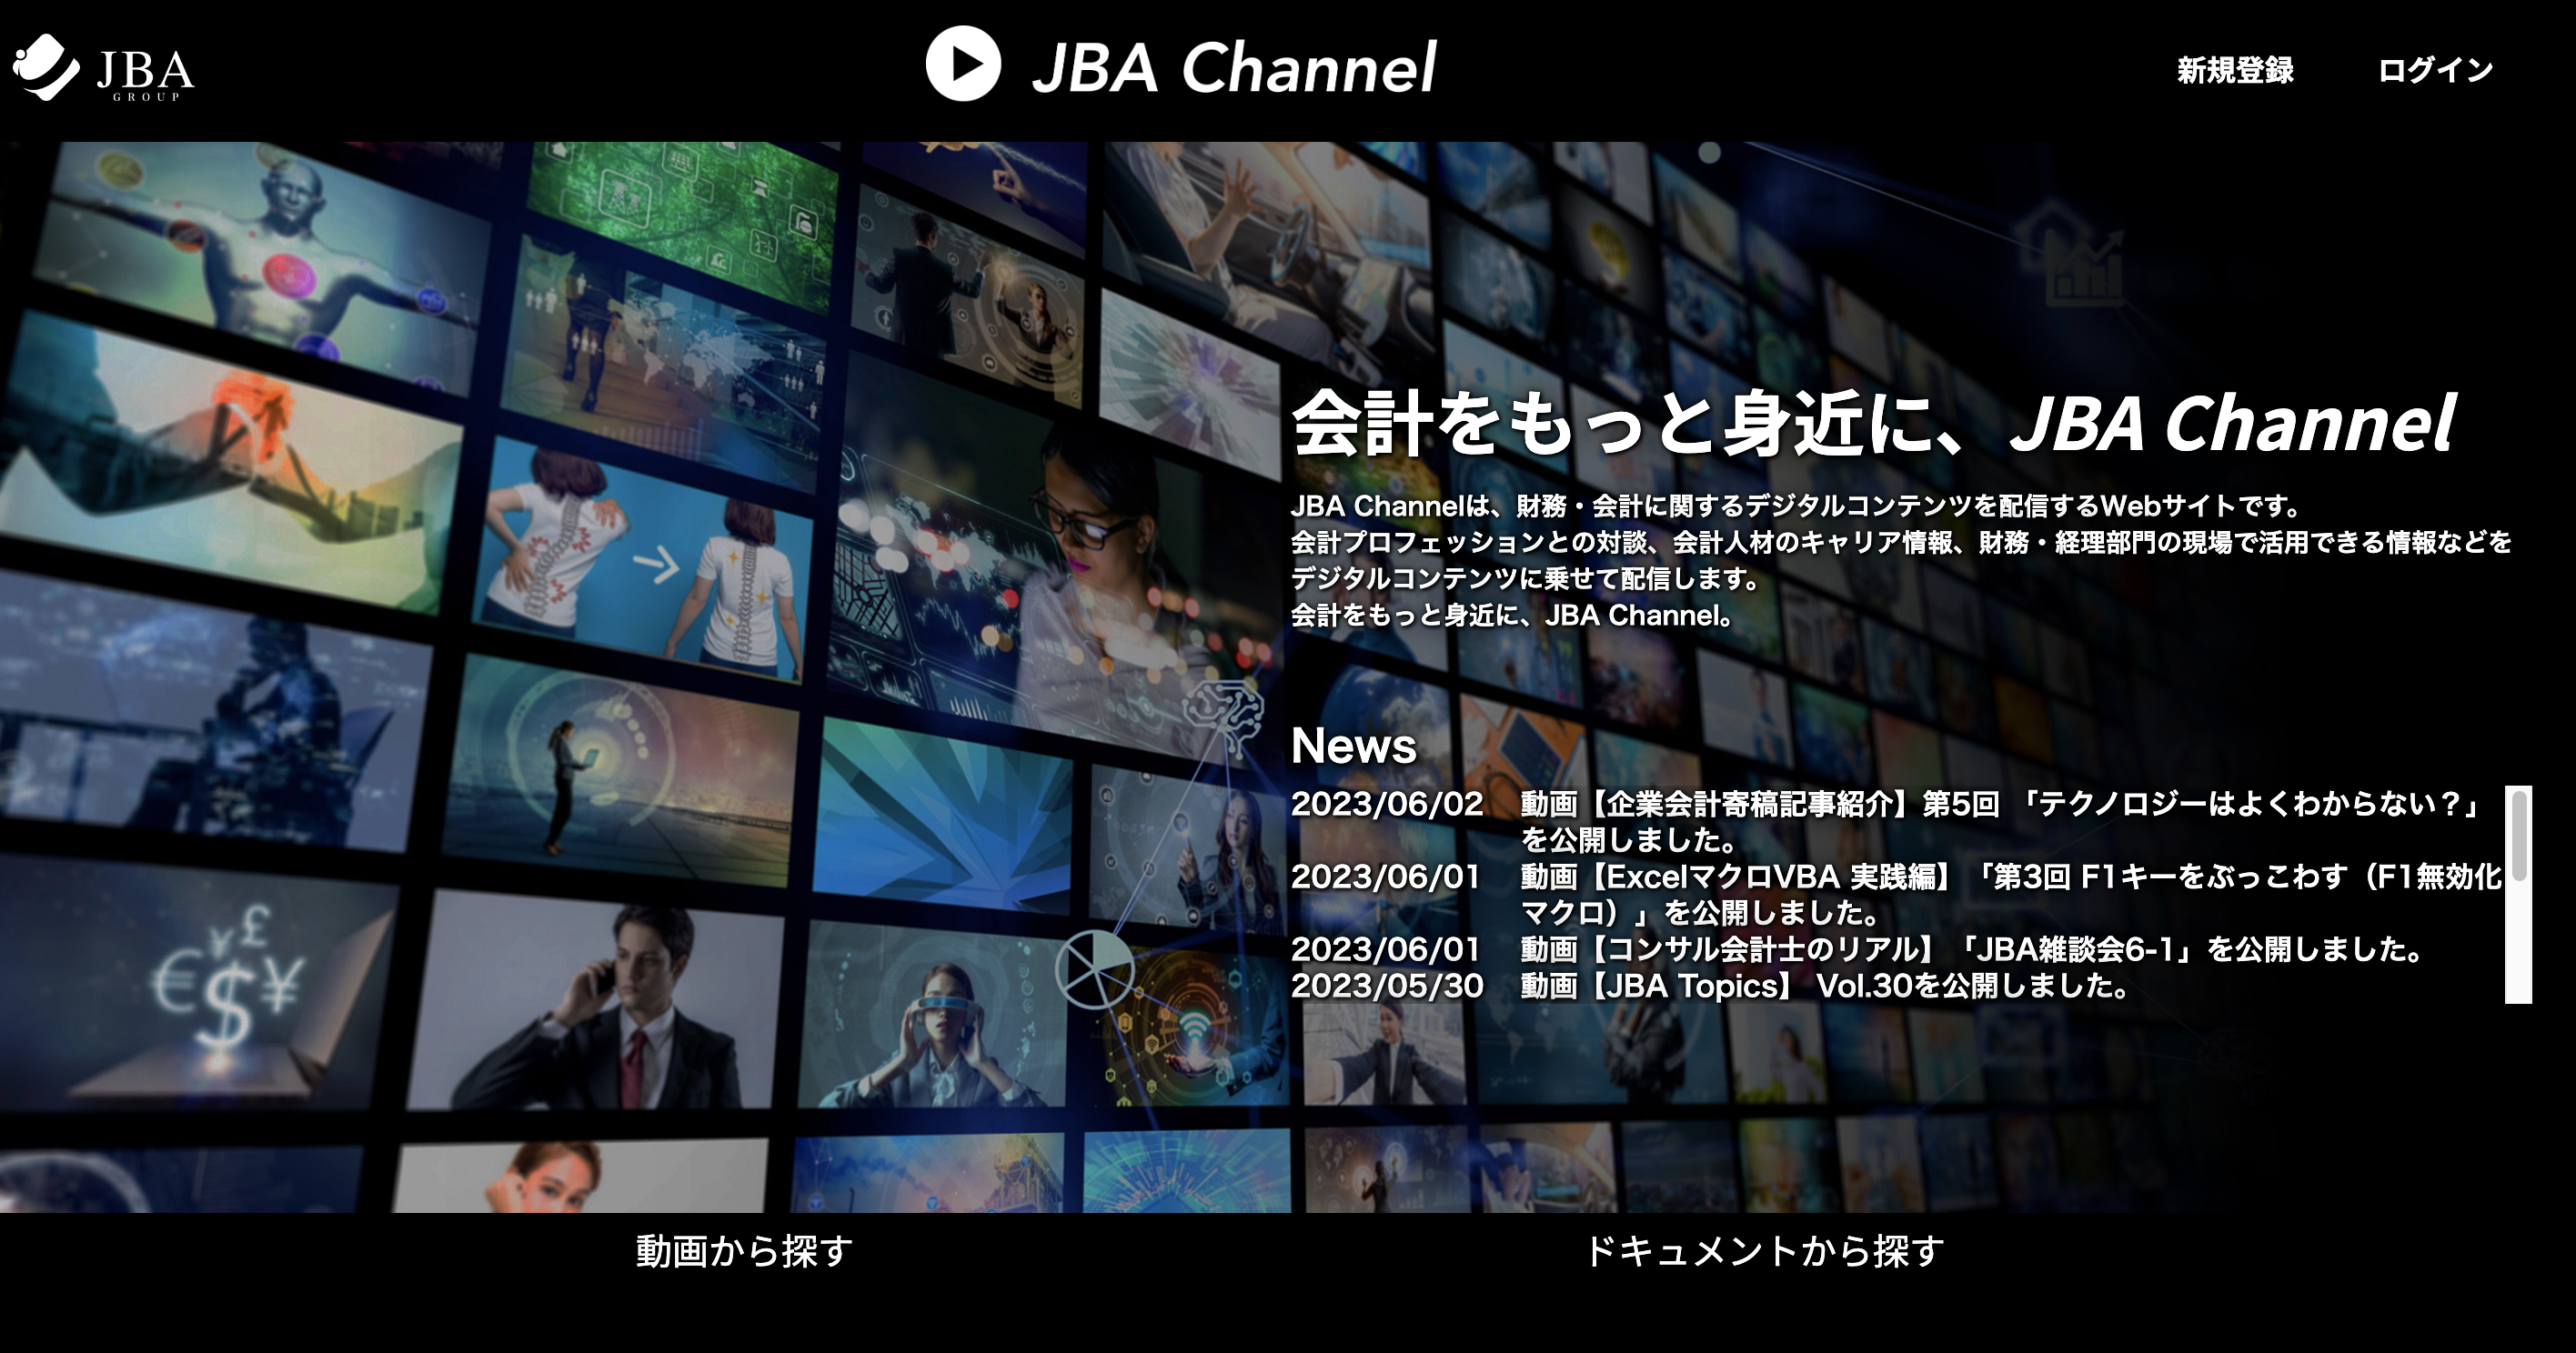 JBA Channel